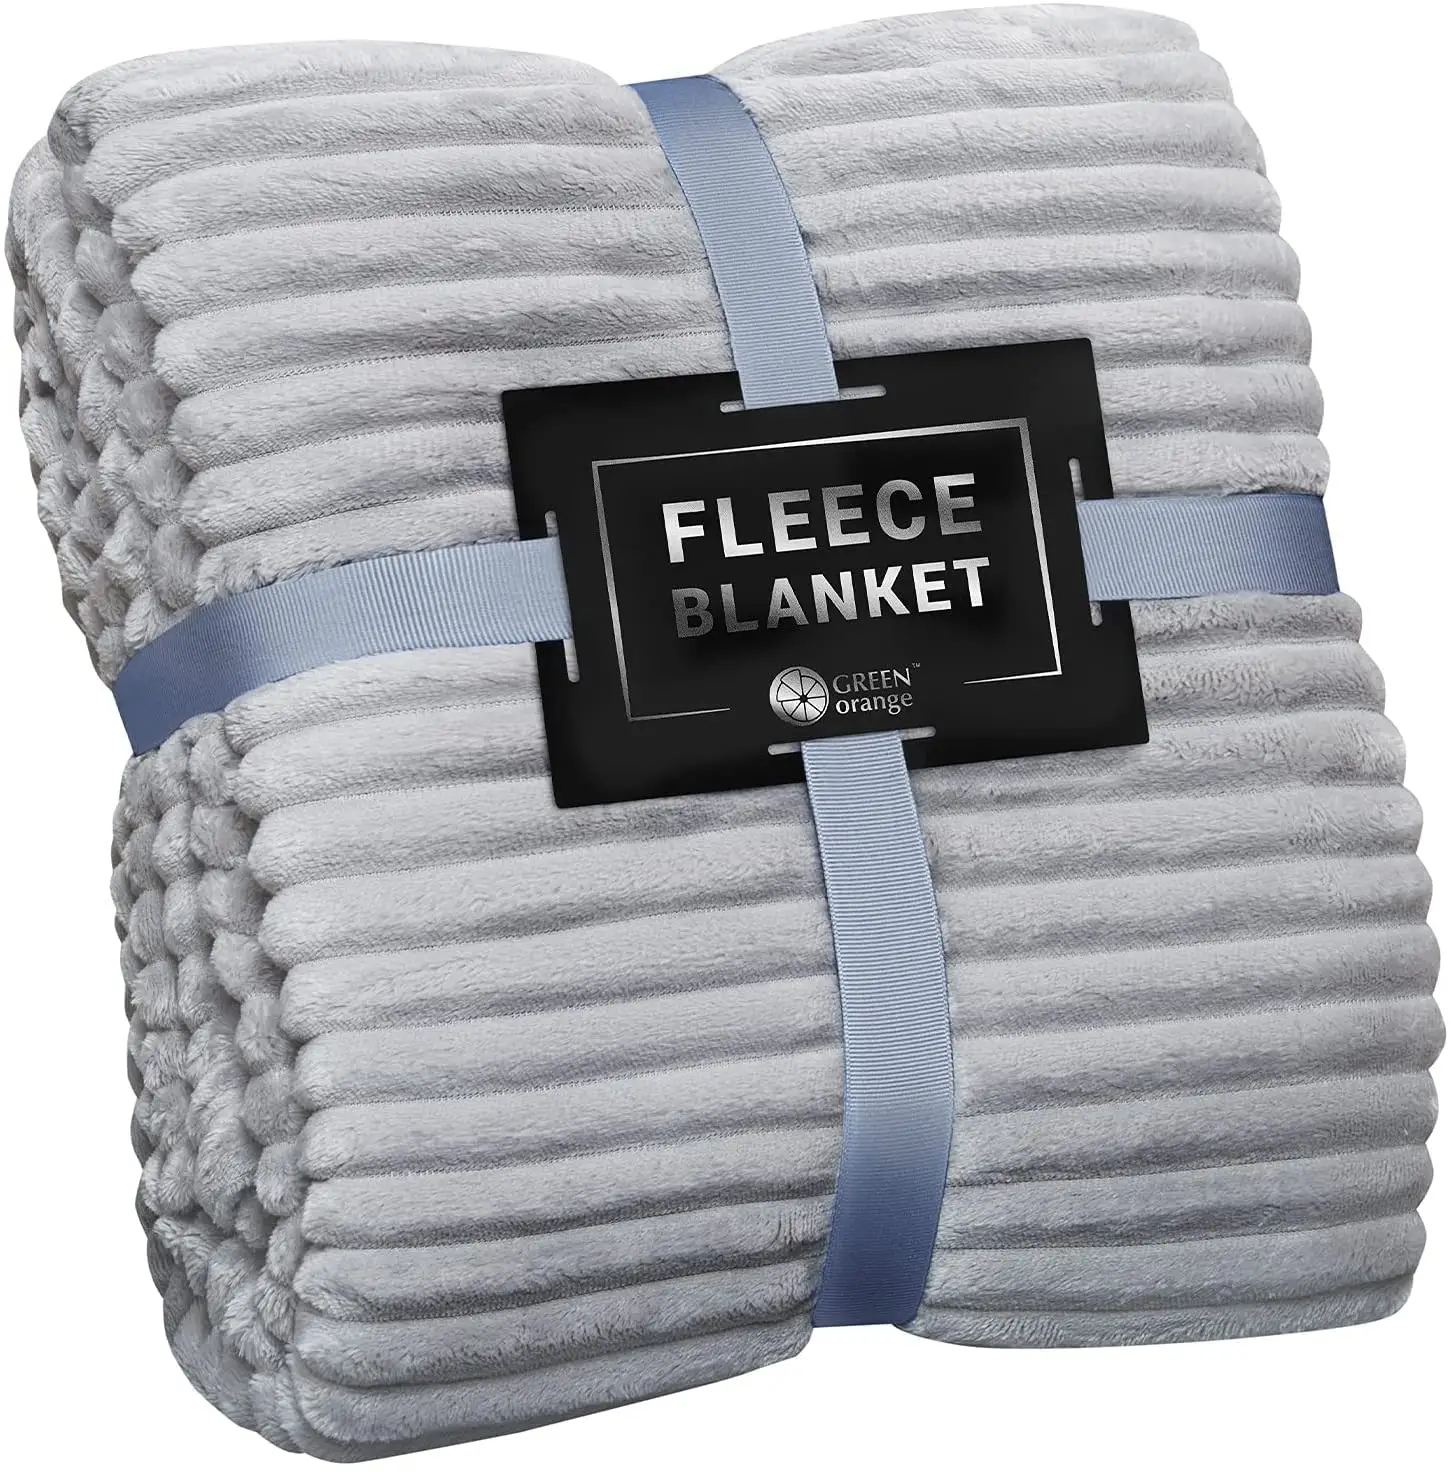 fleece blankets king size bedding fleece blanket queen size grey 270gsm lightweight double size bedsheet blanket